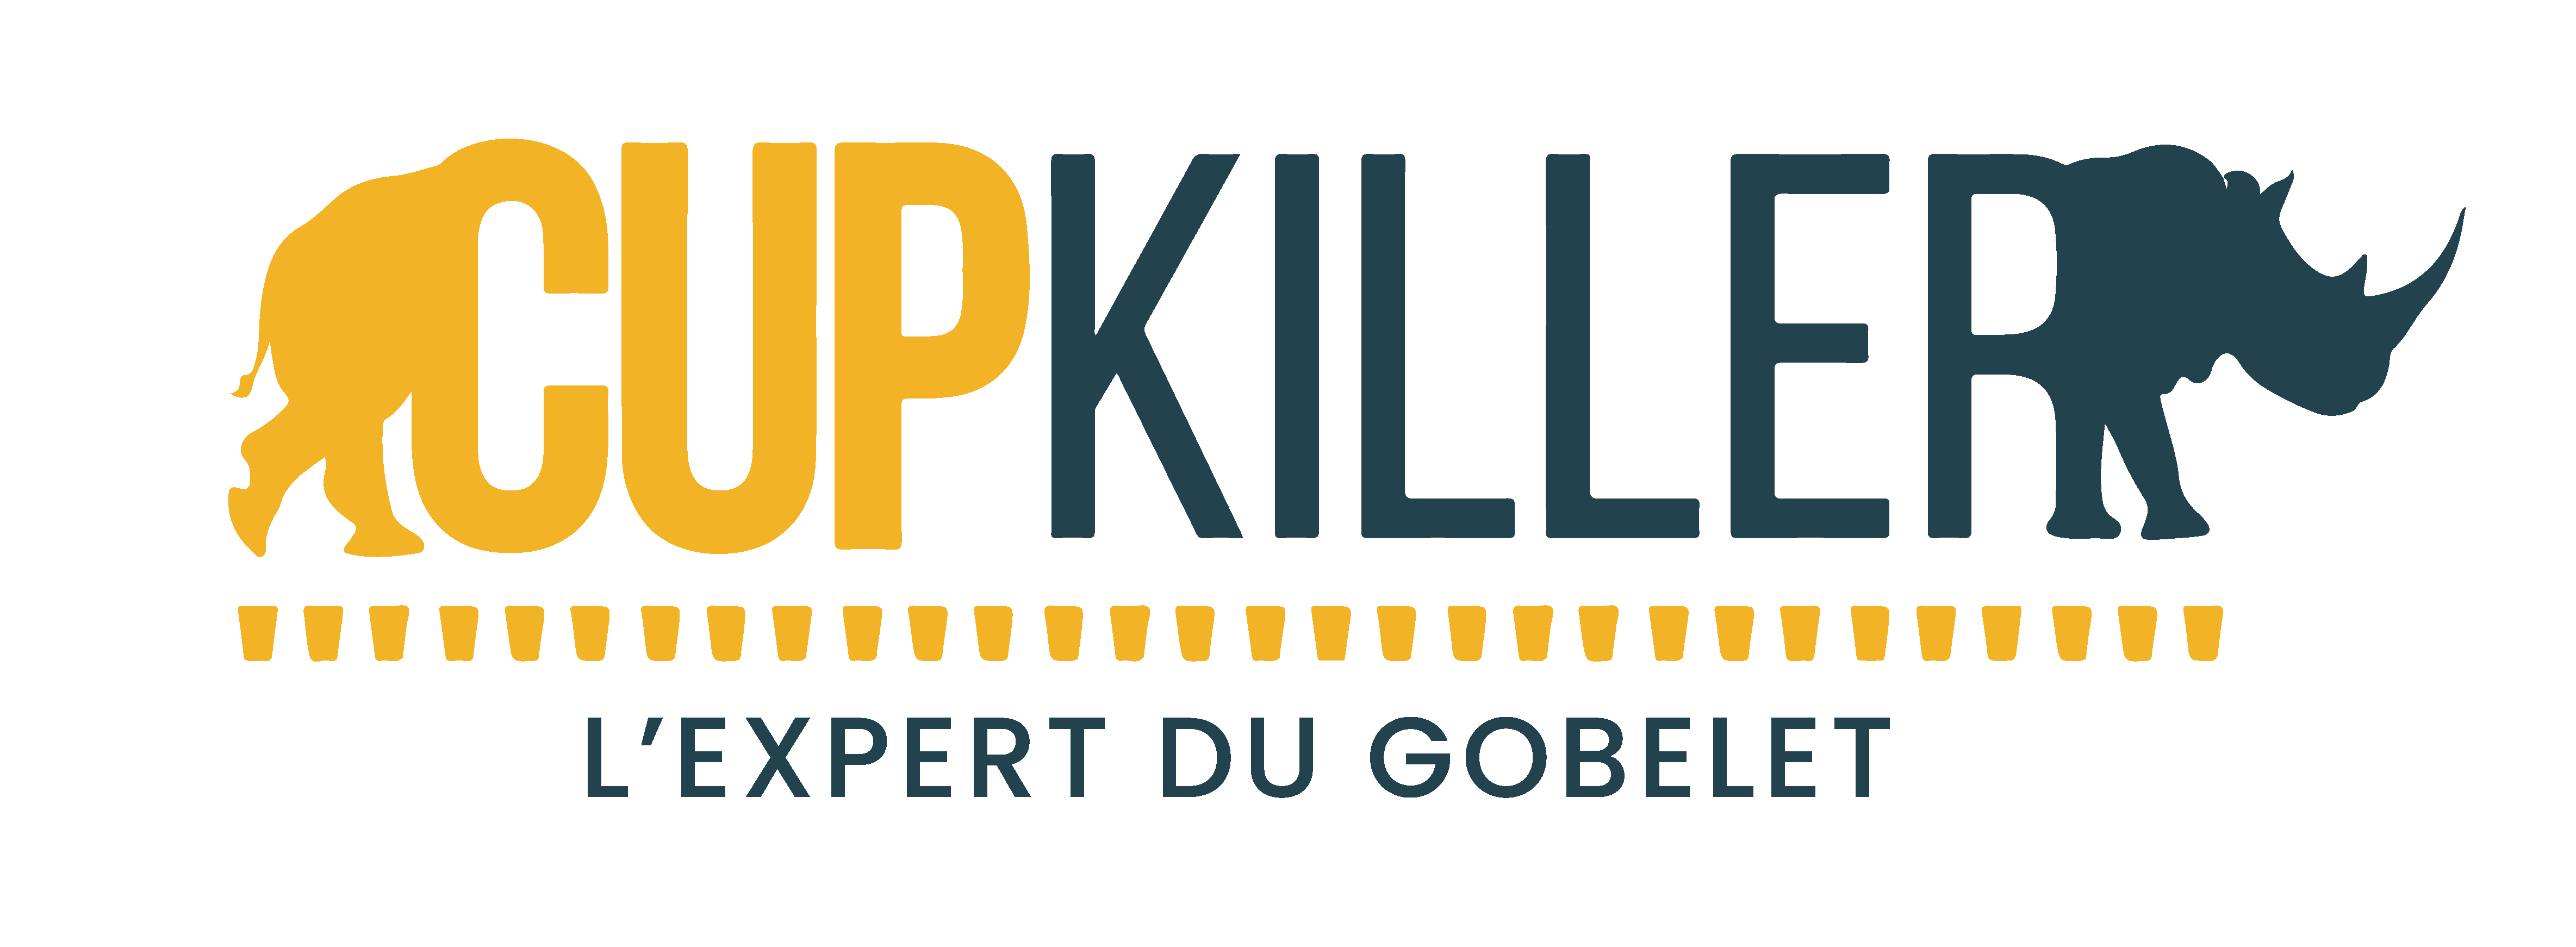 Logo de la societe CupKiller